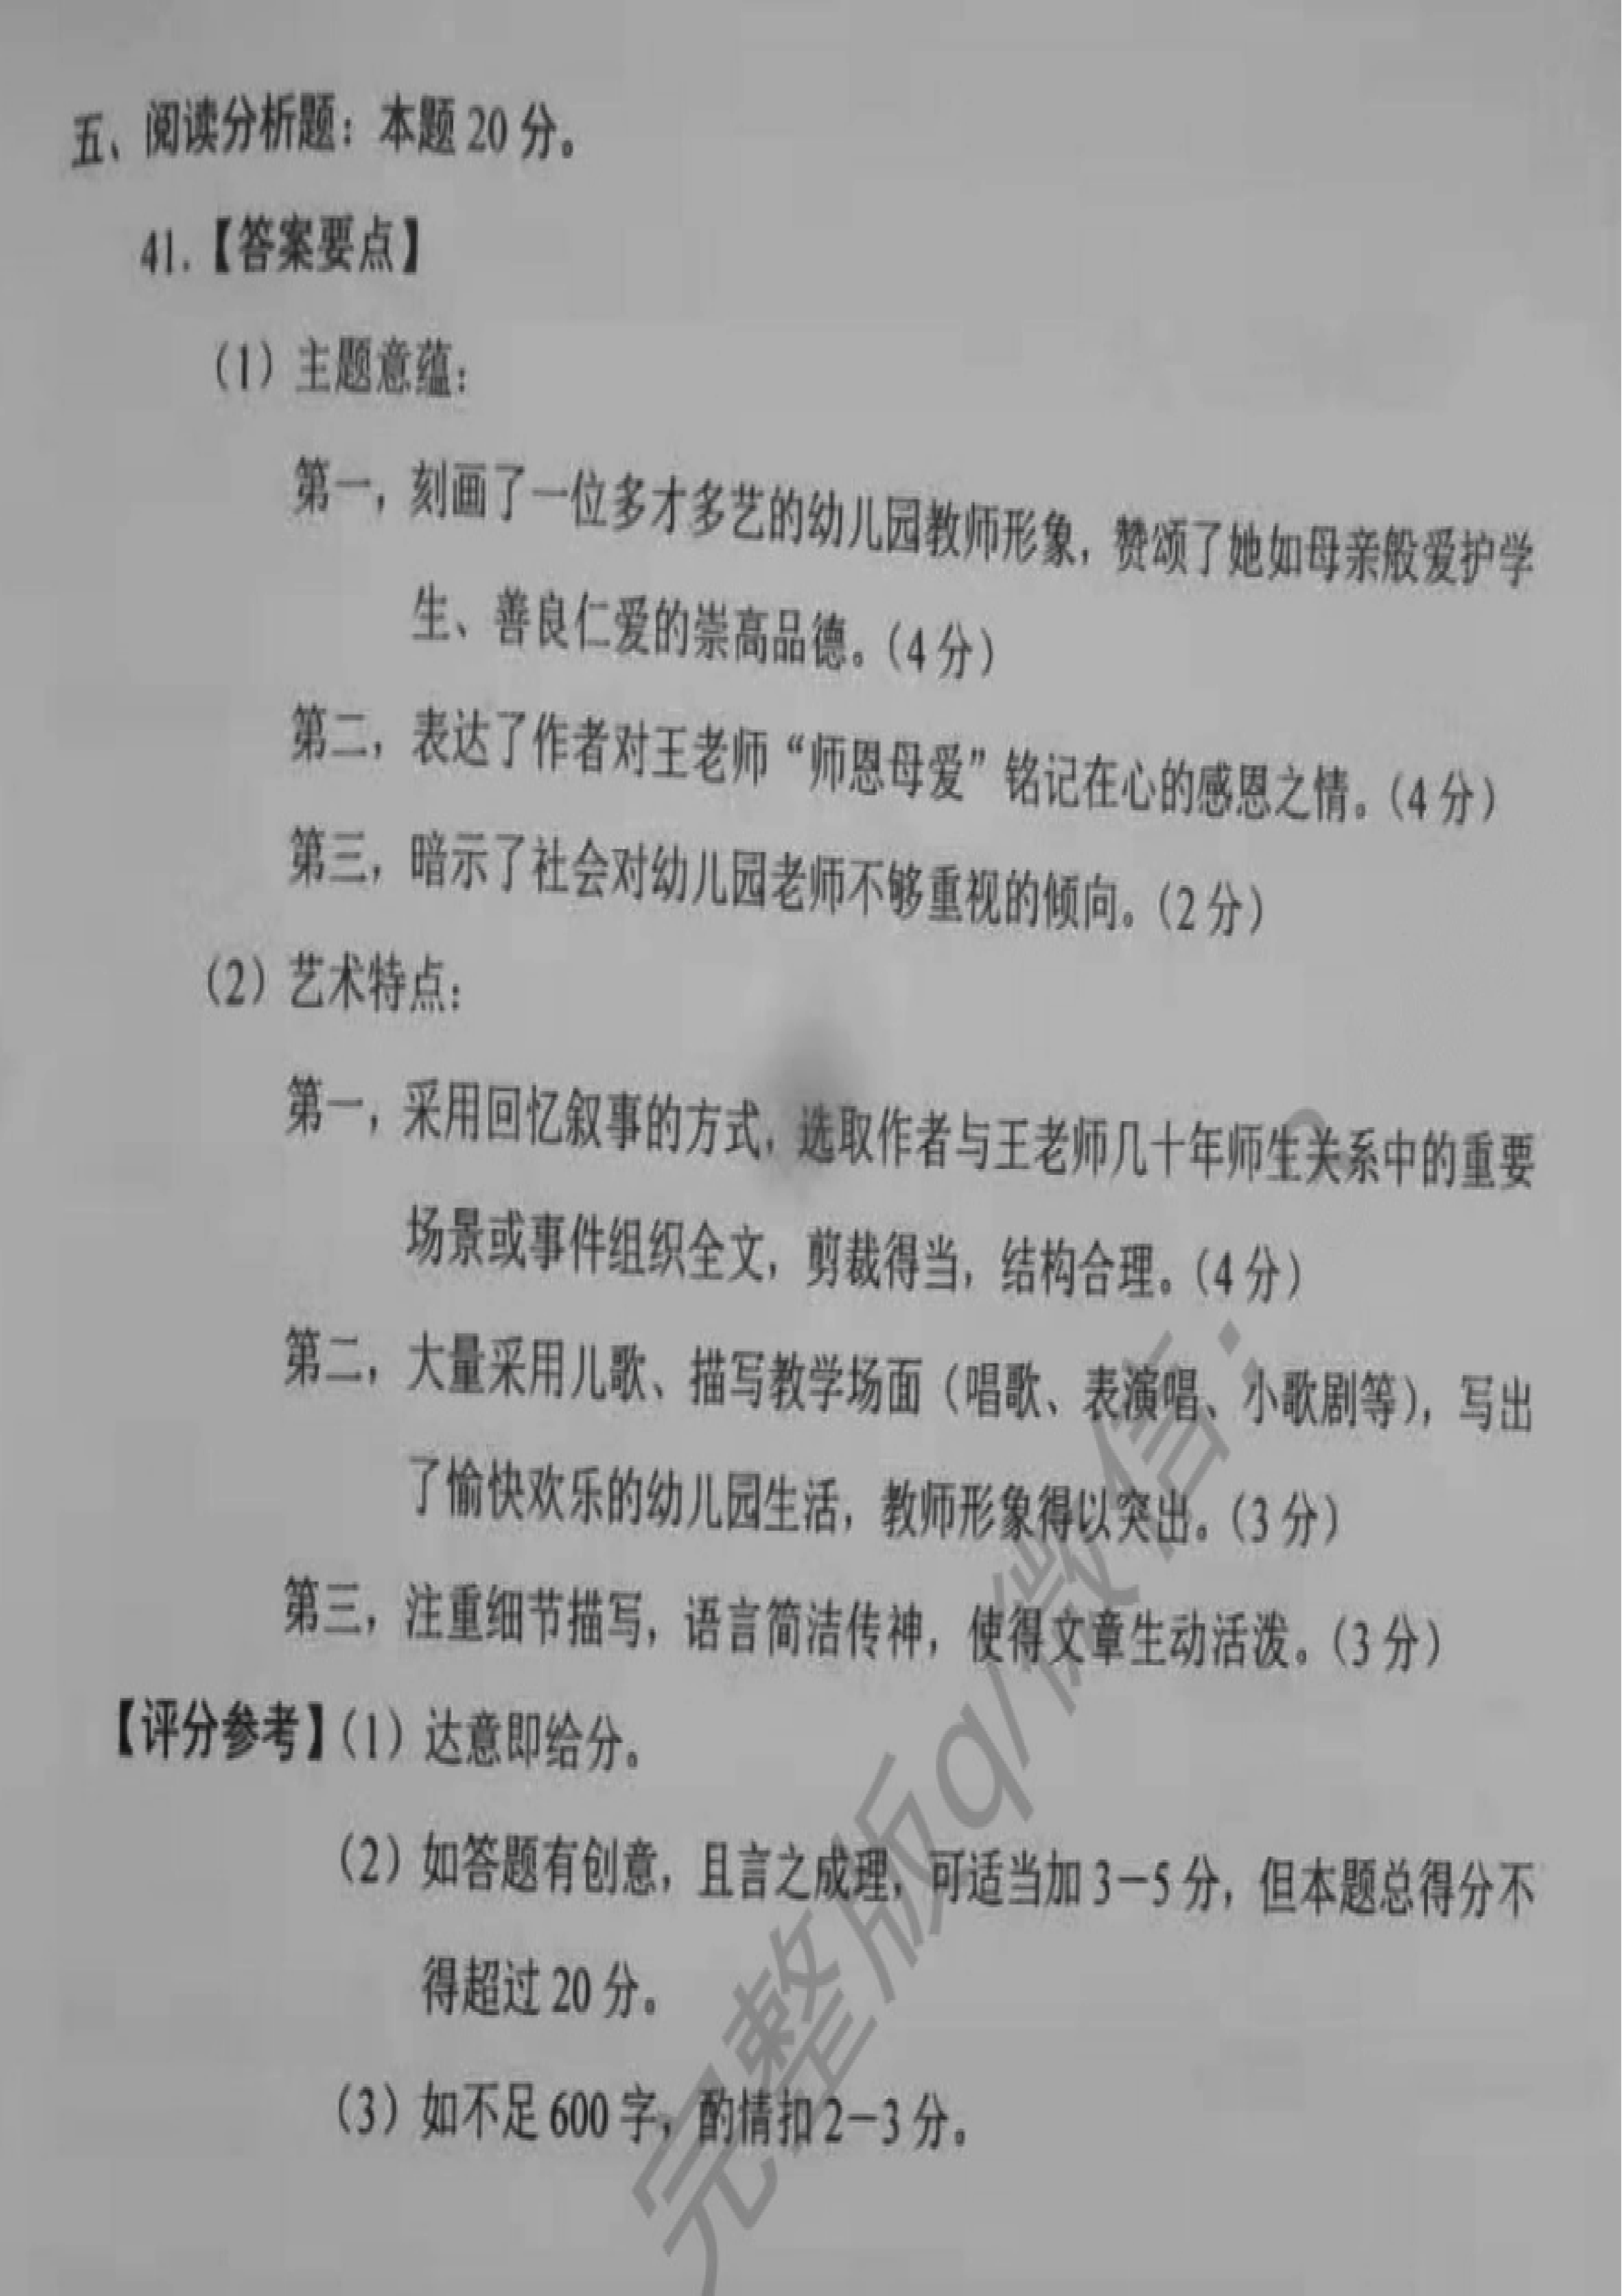 贵州省2019年10月自考00531中国当代文学作品选真题及答案